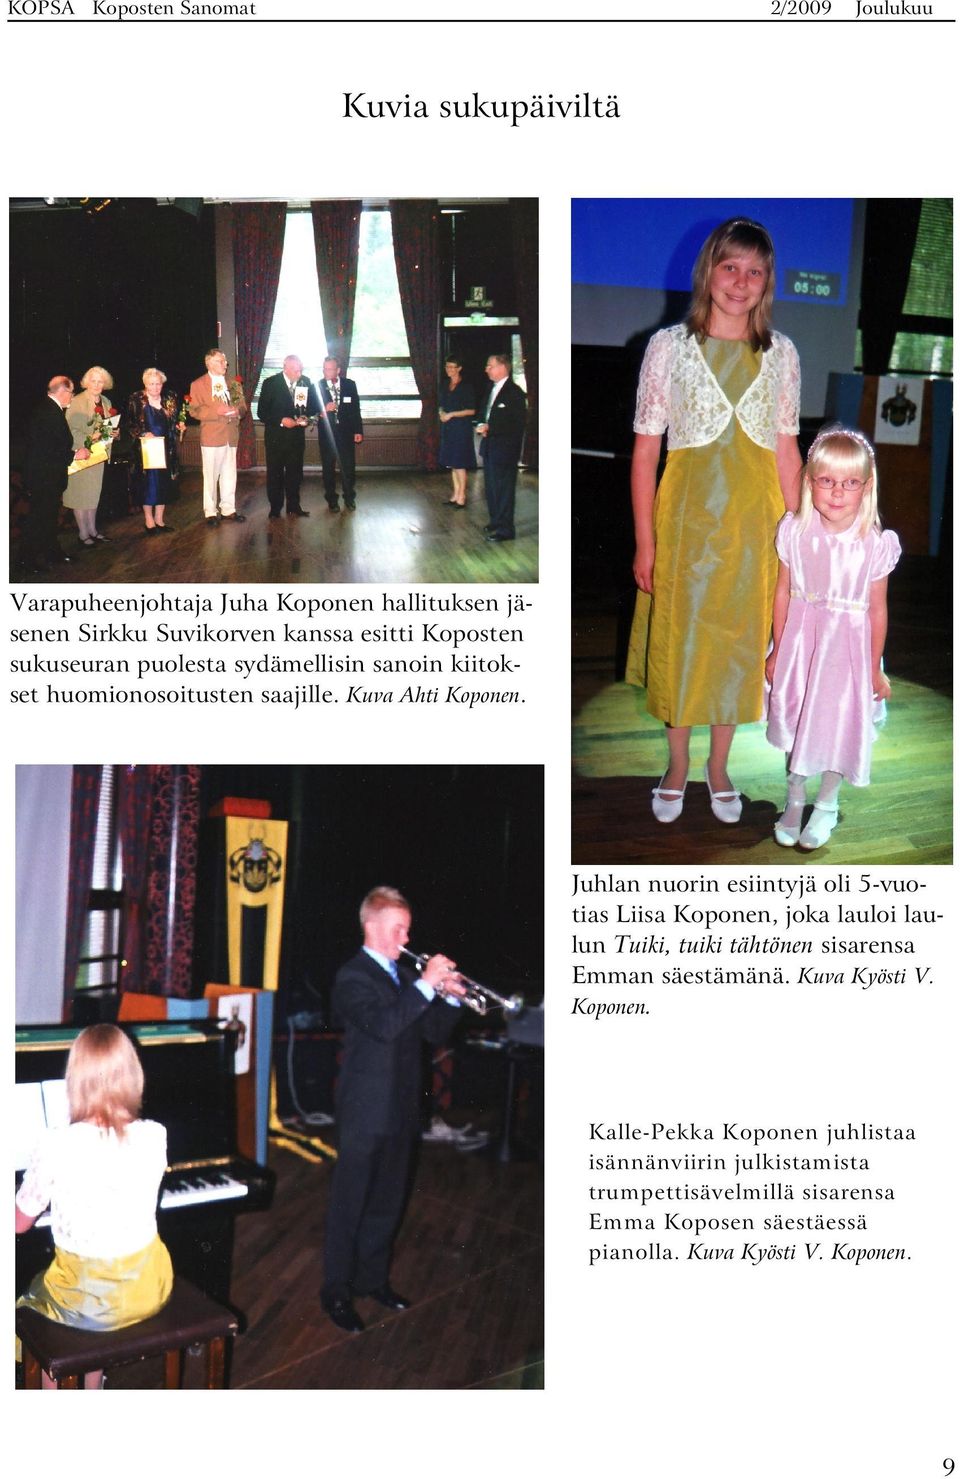 Juhlan nuorin esiintyjä oli 5-vuotias Liisa Koponen, joka lauloi laulun Tuiki, tuiki tähtönen sisarensa Emman säestämänä.